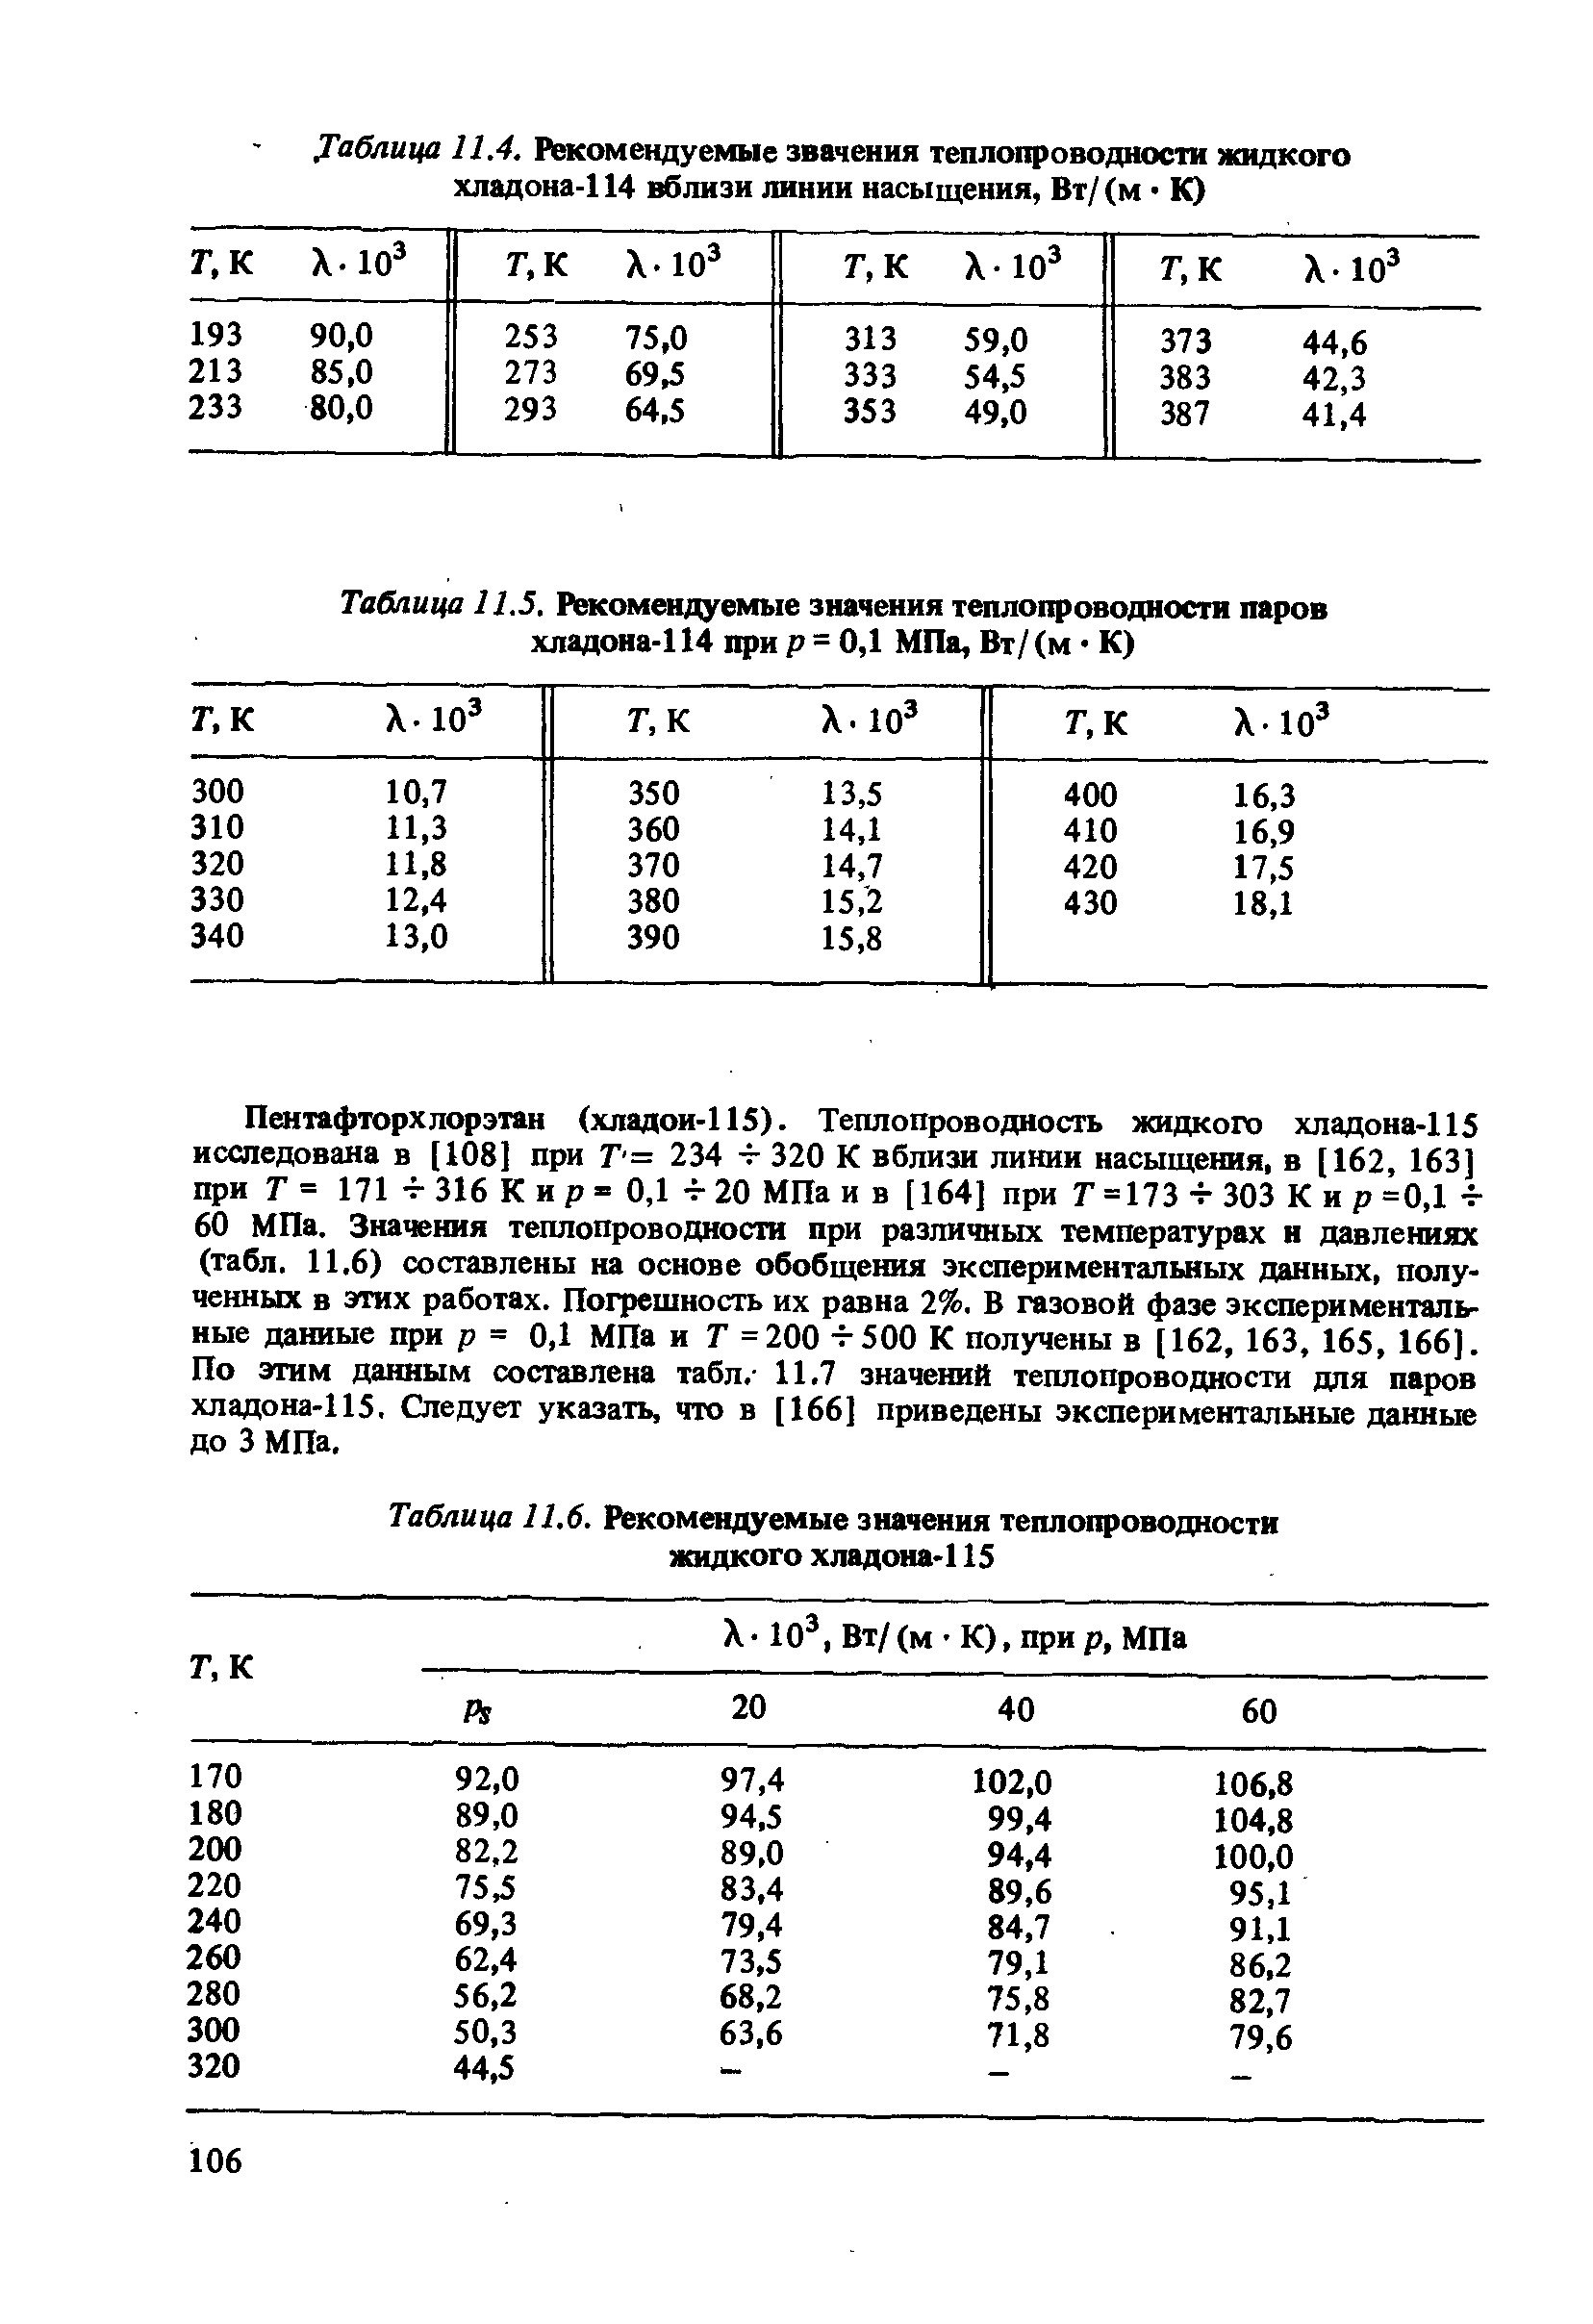 Таблица 11.6. Рекомендуемые значения теплопроводности жидкого хладона-115
